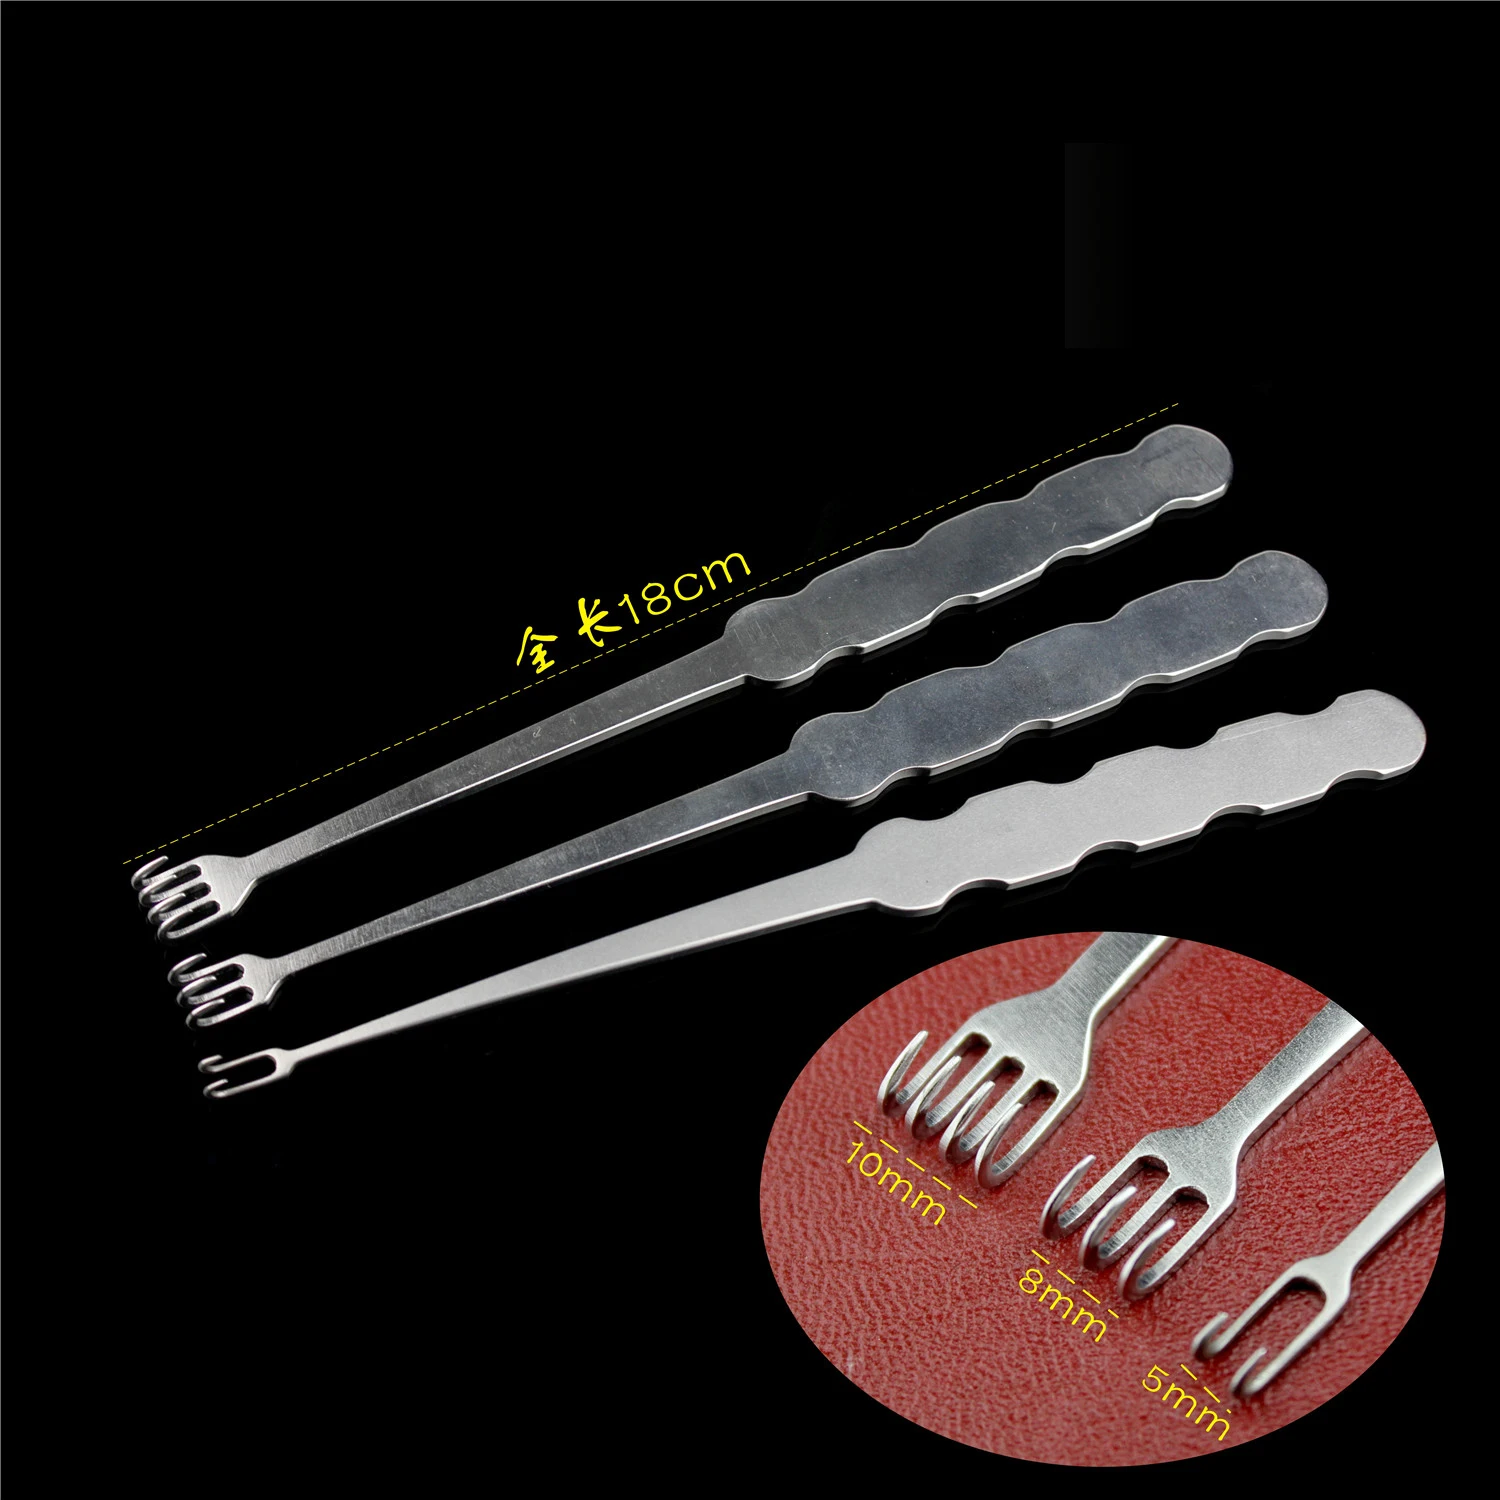 

Медицинские Маленькие крючки для ручной хирургии, двойные зубчатые крючки, три зубчатые крючки, четыре зубчатые крючки, крючки из нержавеющей стали, ортопедические